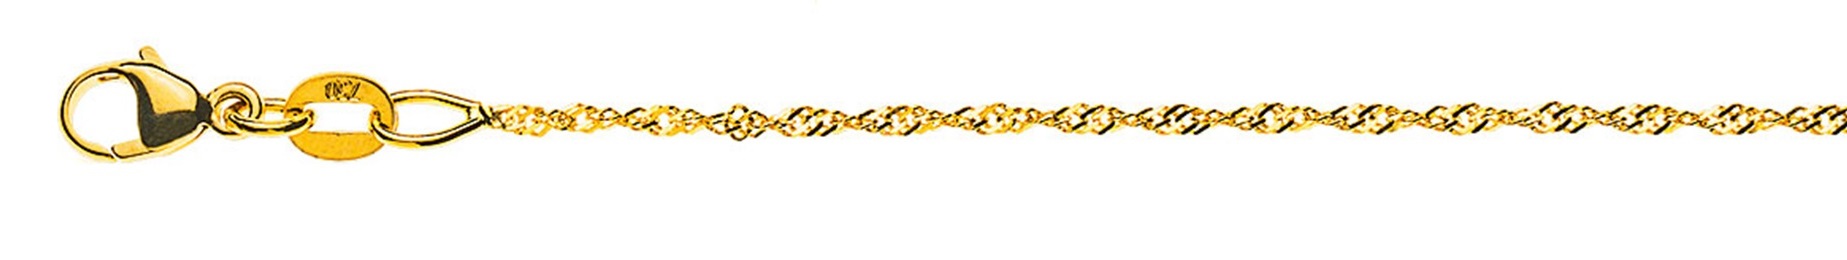 AURONOS Prestige Halskette Gelbgold 18K Singapurkette 50cm 1.2mm